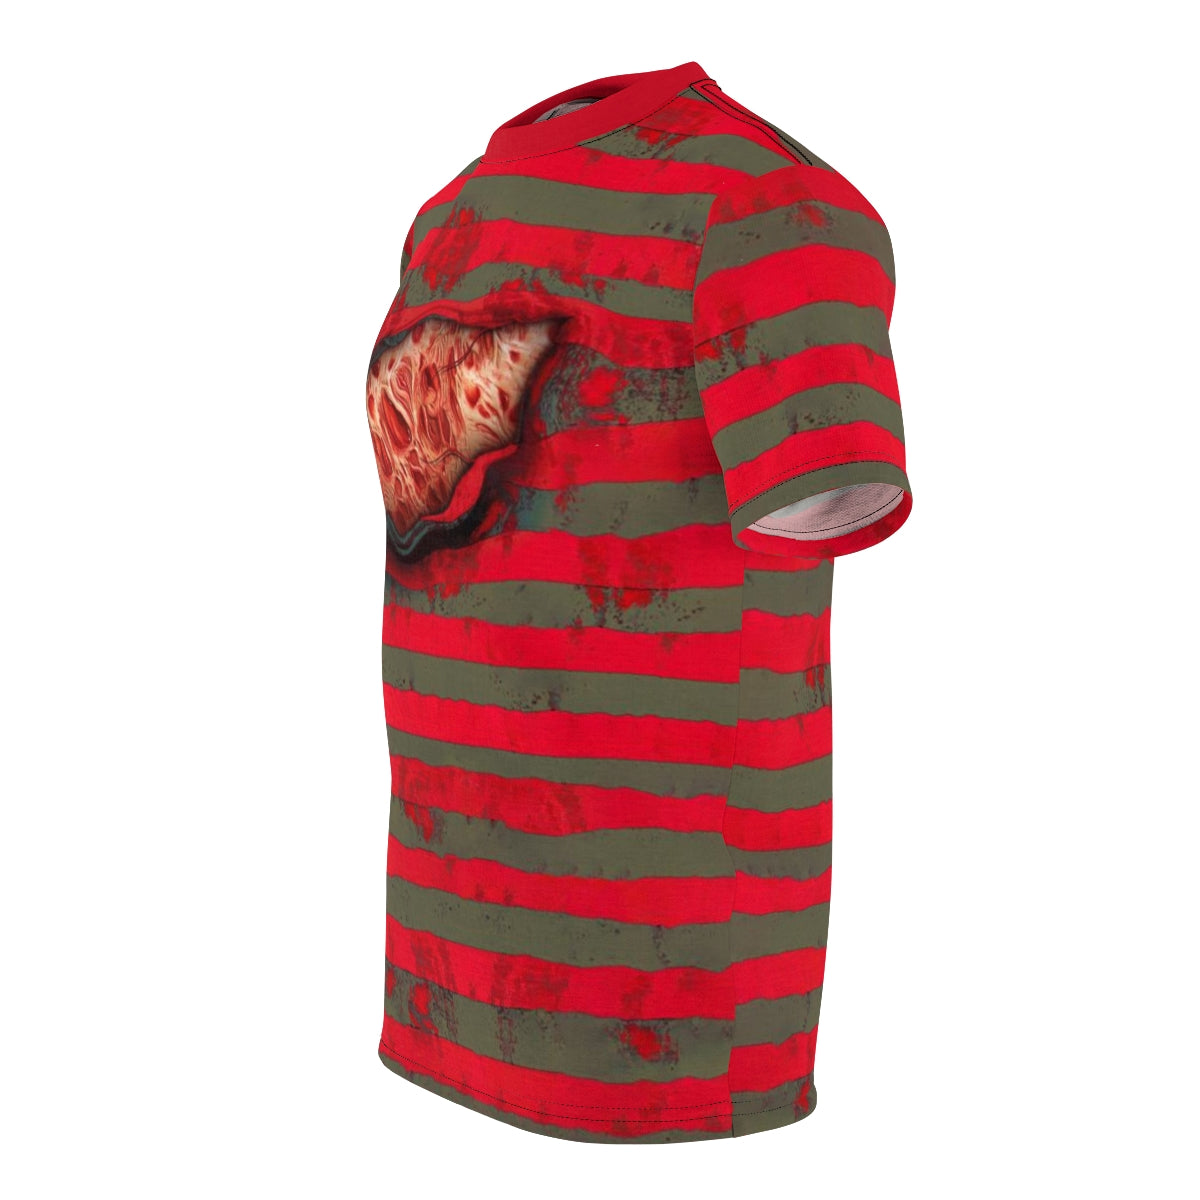 Freddy's Burns - Kruger | Halloween Horror T-shirt